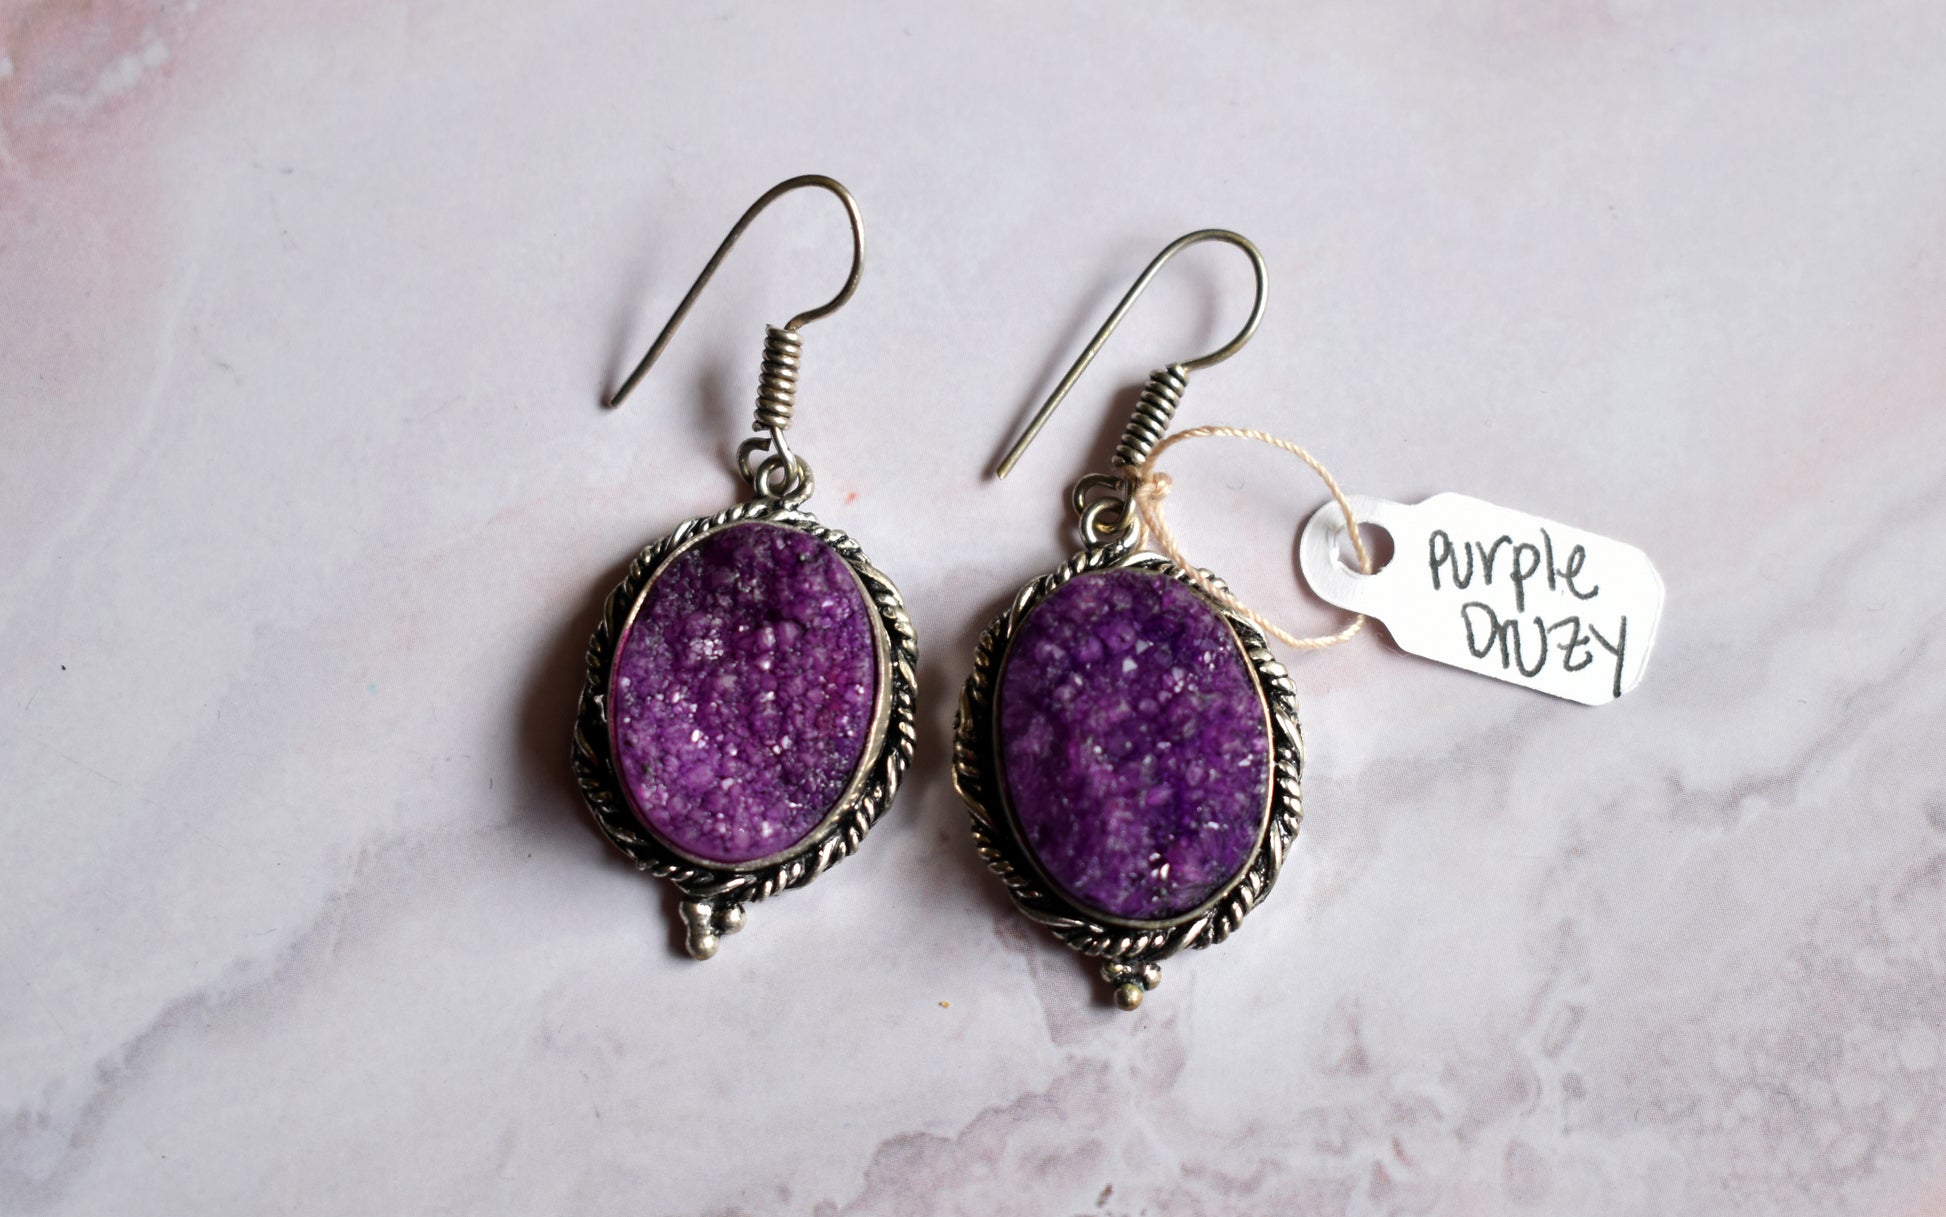 stones-of-transformation - Purple Druzy Earrings - Stones of Transformation - 